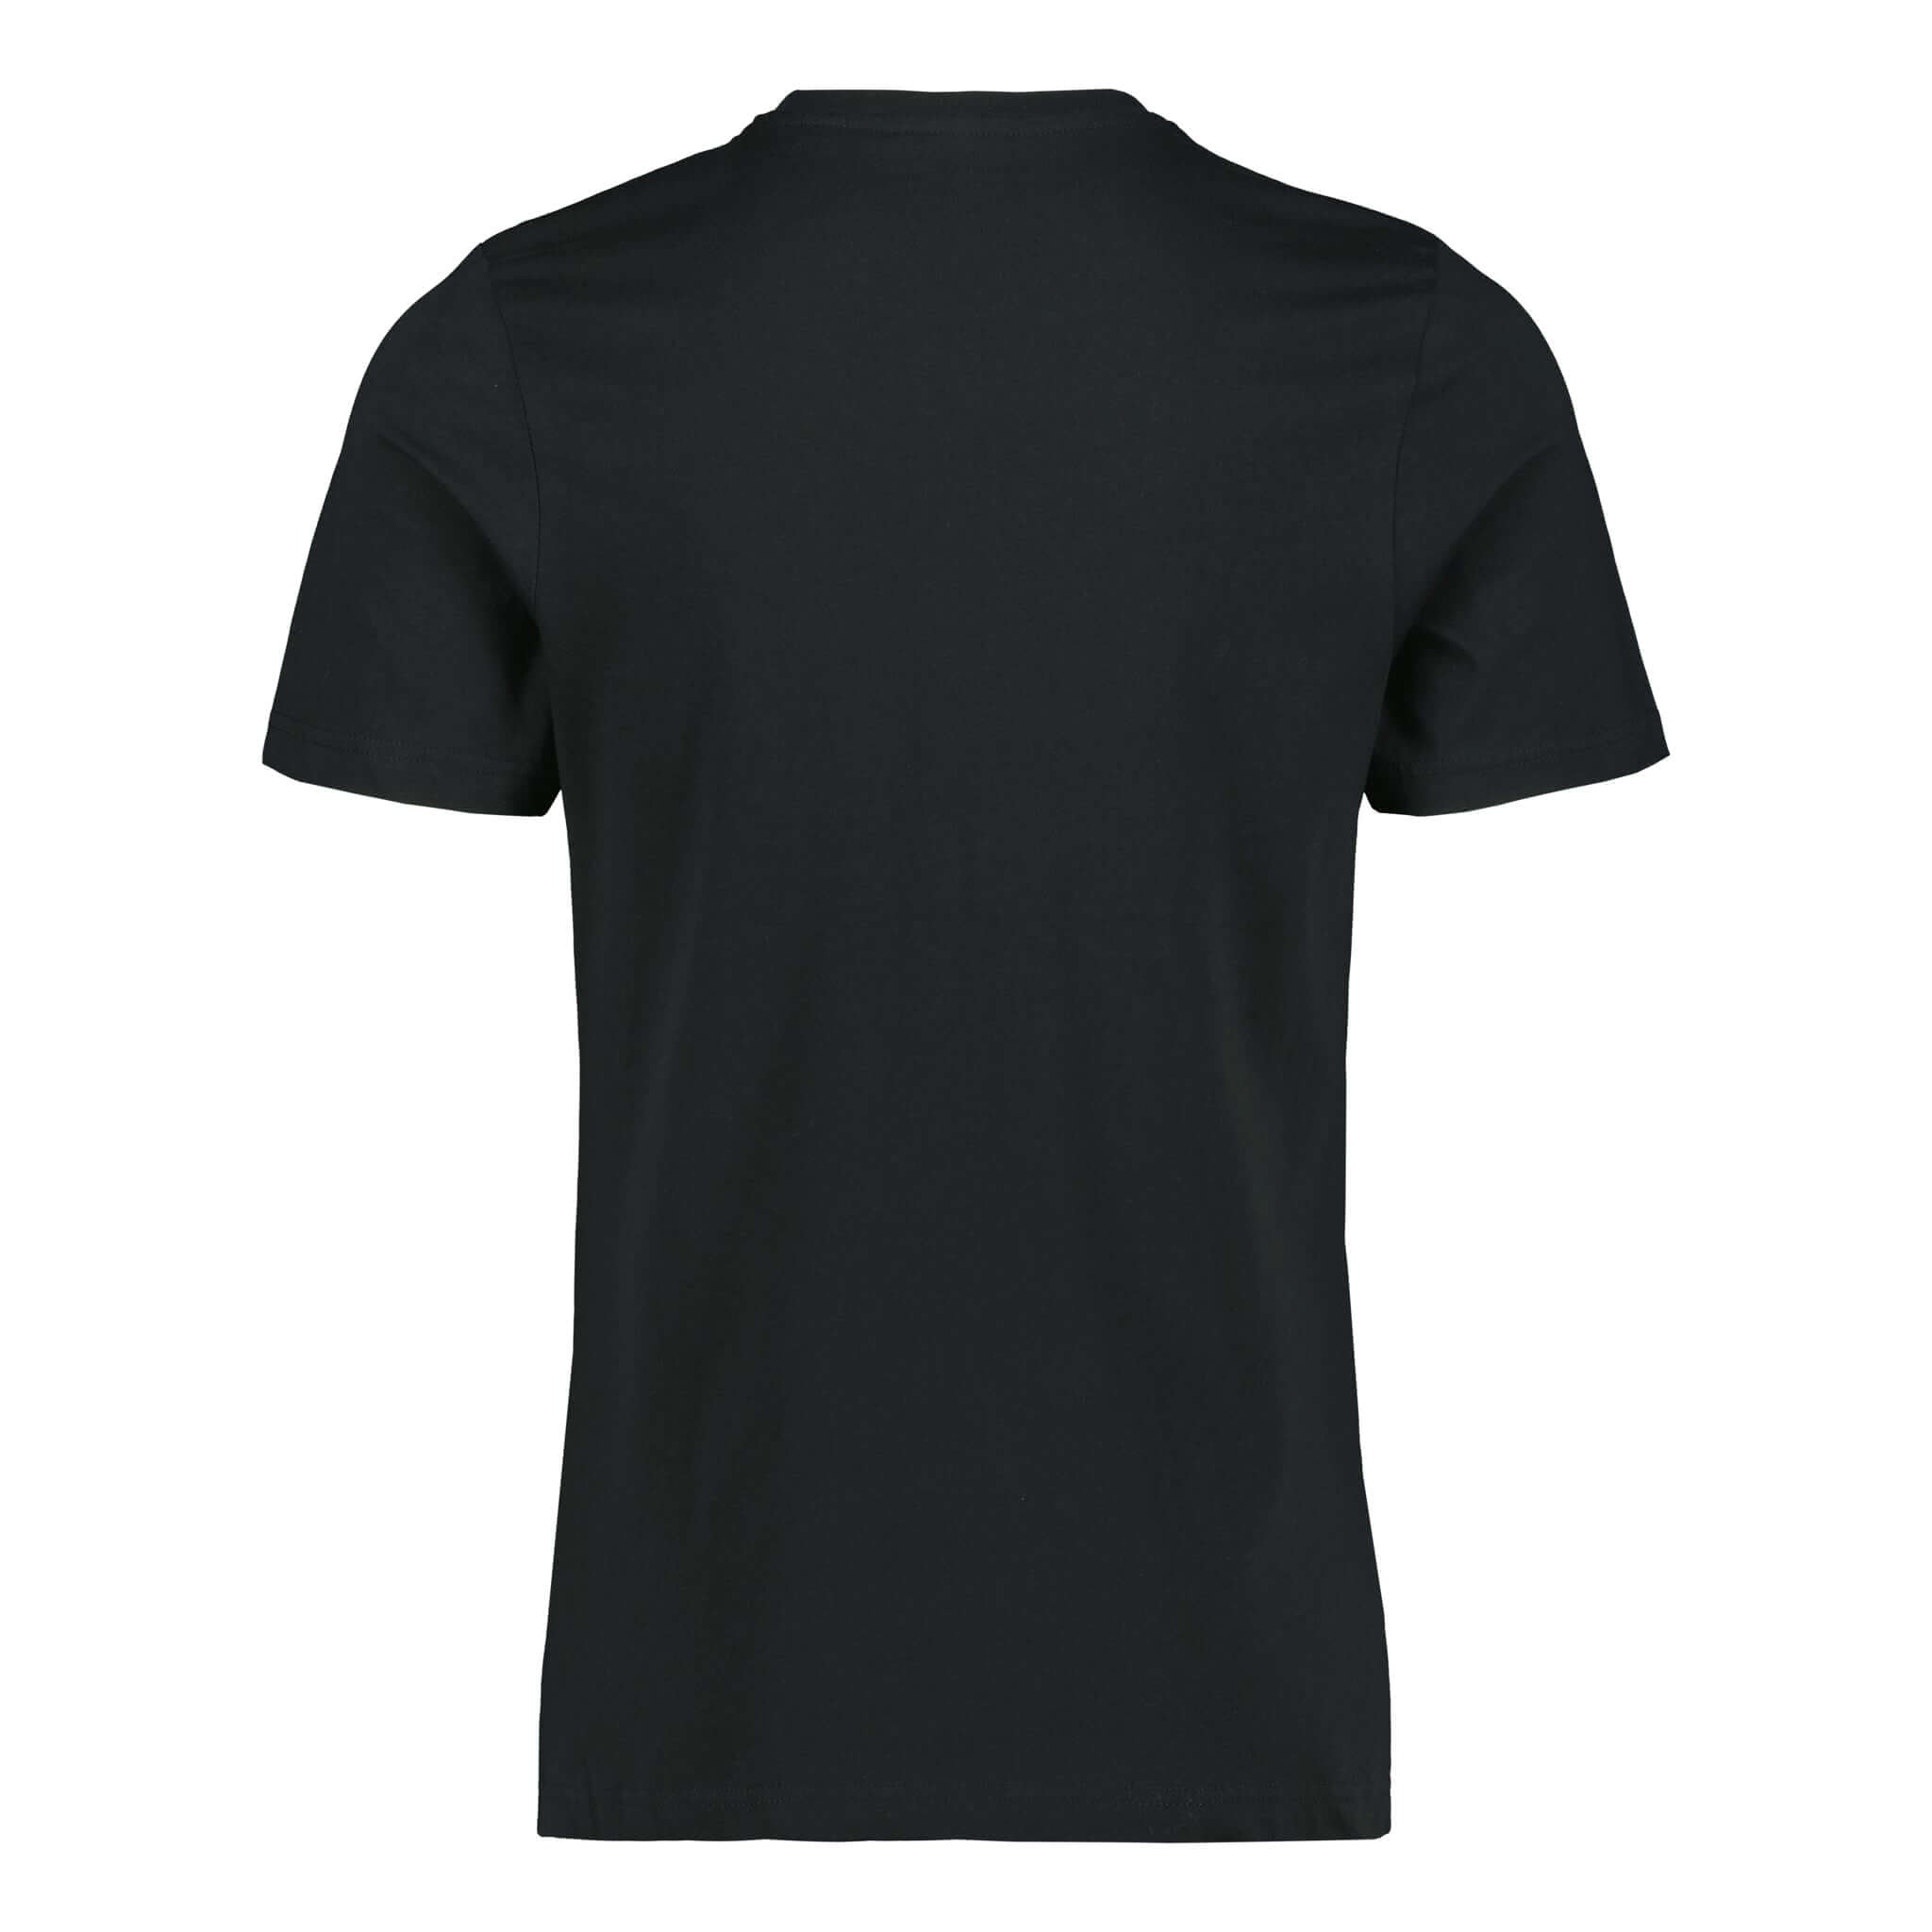 ENCE Basic T-Shirt Black v2